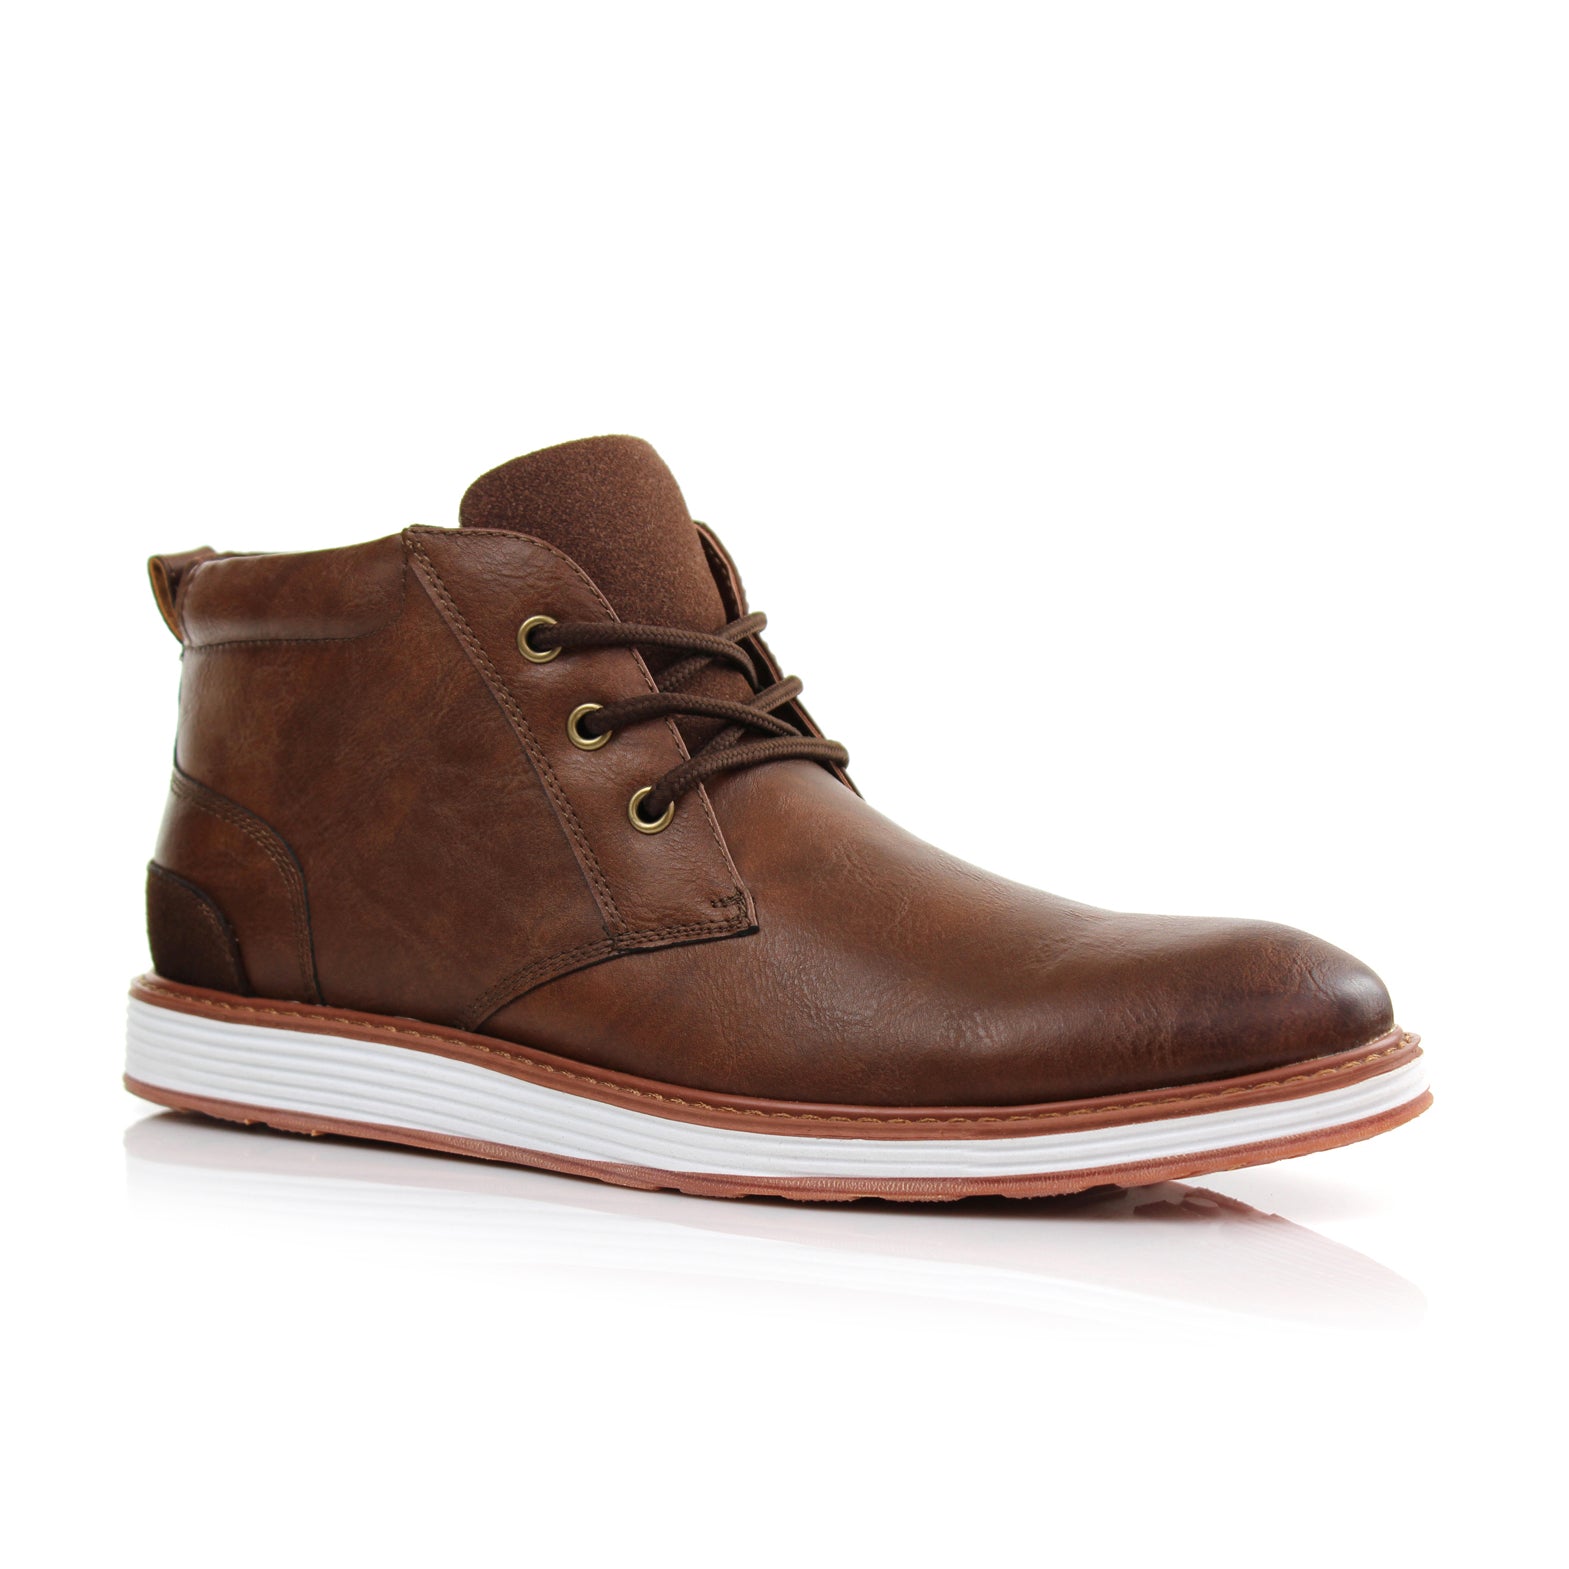 Sneaker Chukka Boots | Houstan by Ferro Aldo | Conal Footwear | Main Angle View